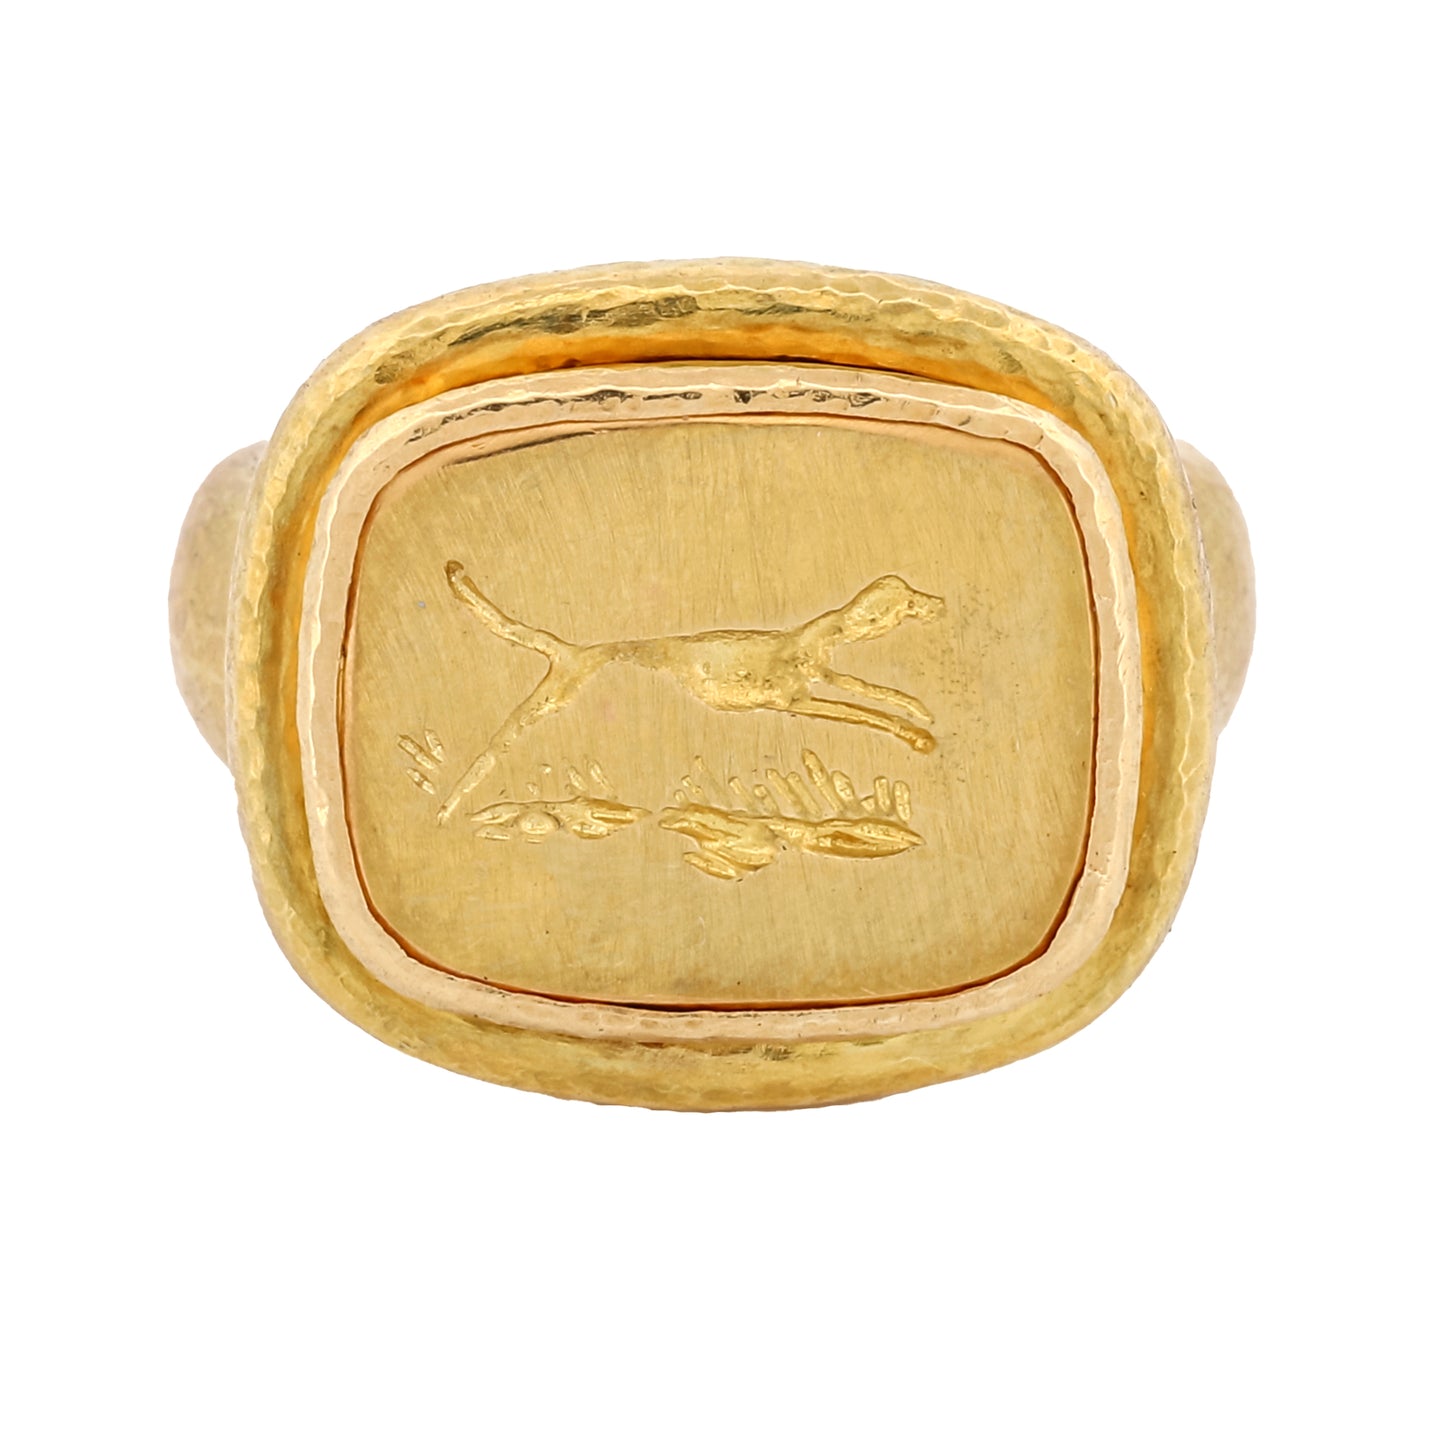 Elizabeth Locke 18k Gold Greyhound Signet Ring Hammered Texture